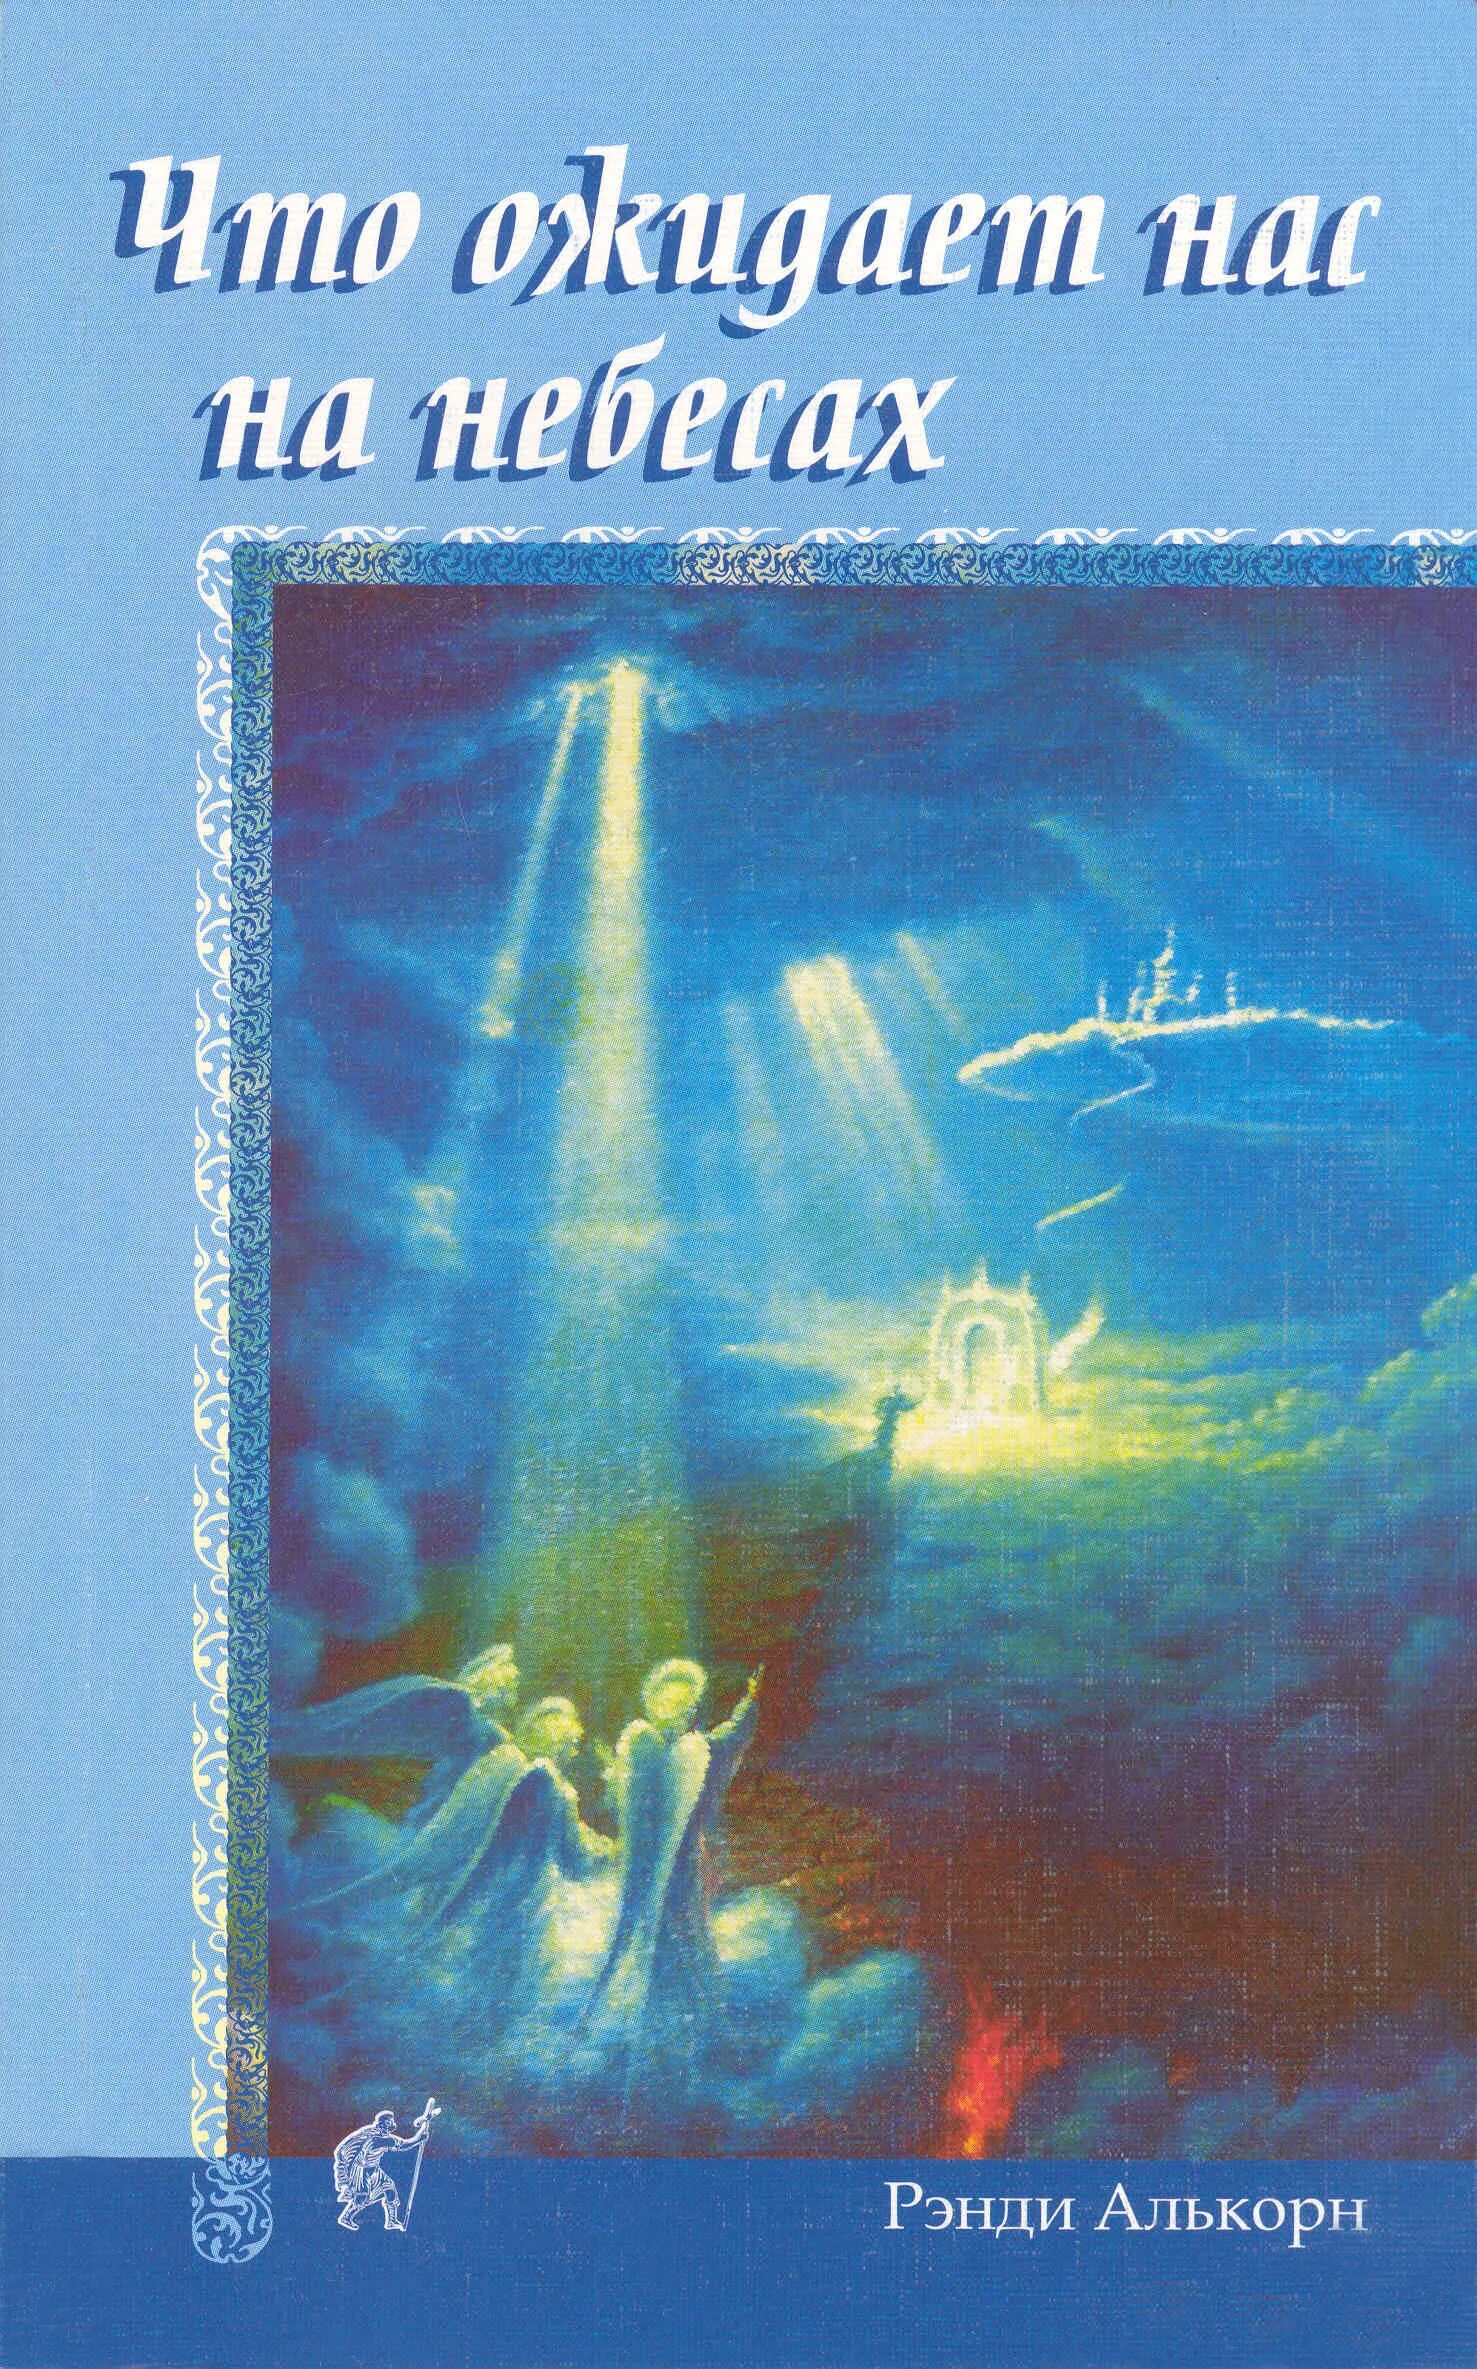 Книга сделано на небесах. Христианские книги о небесах. Книга небо. В небо книга Автор. Рэнди Алькорн.